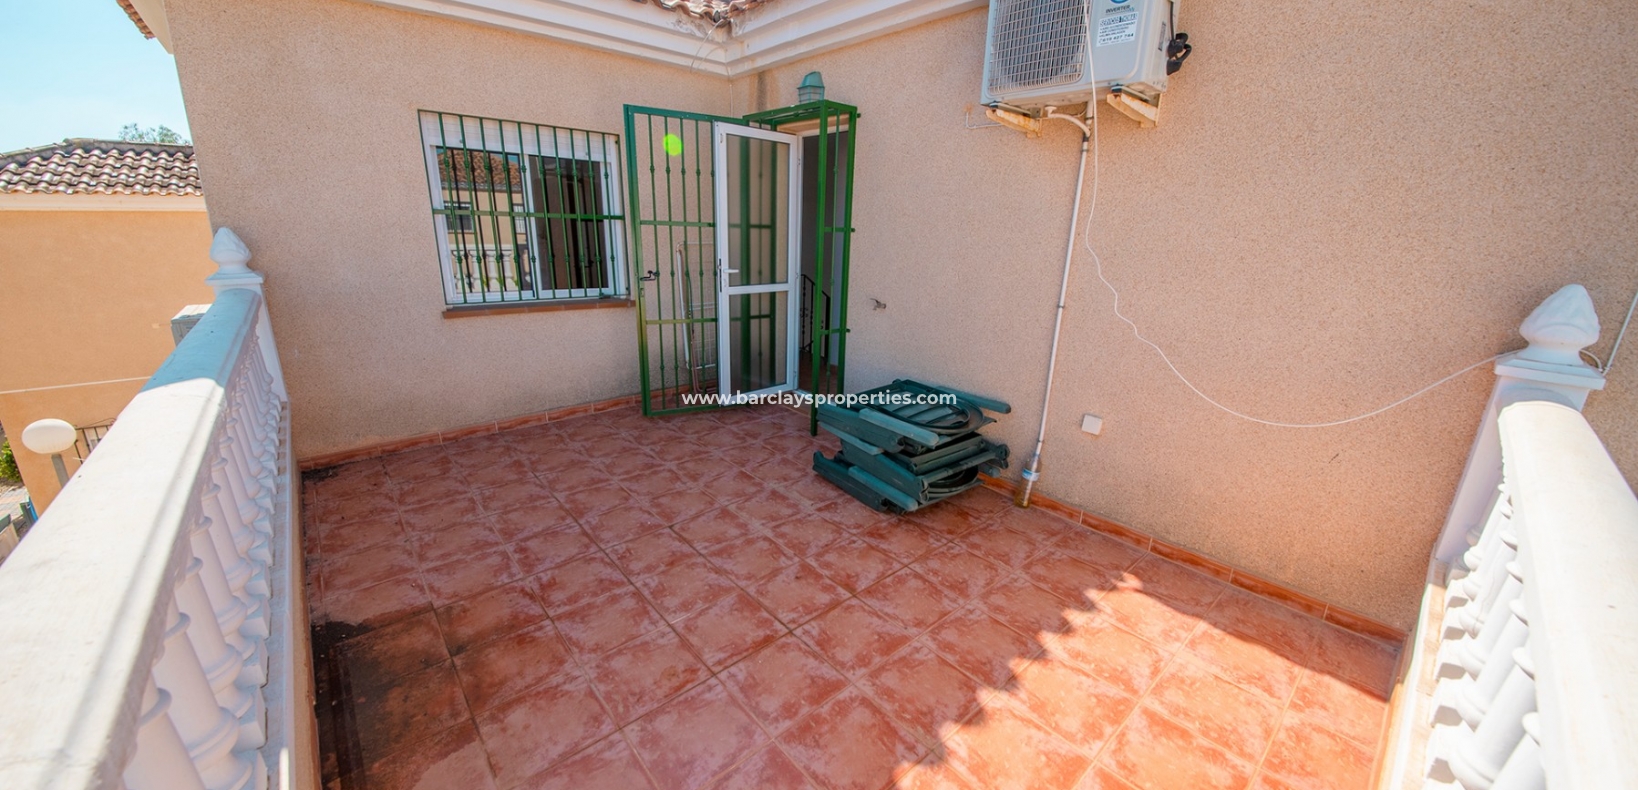 Terrasse ensoleillée - Maison jumelée à vendre à La Marina Espagne